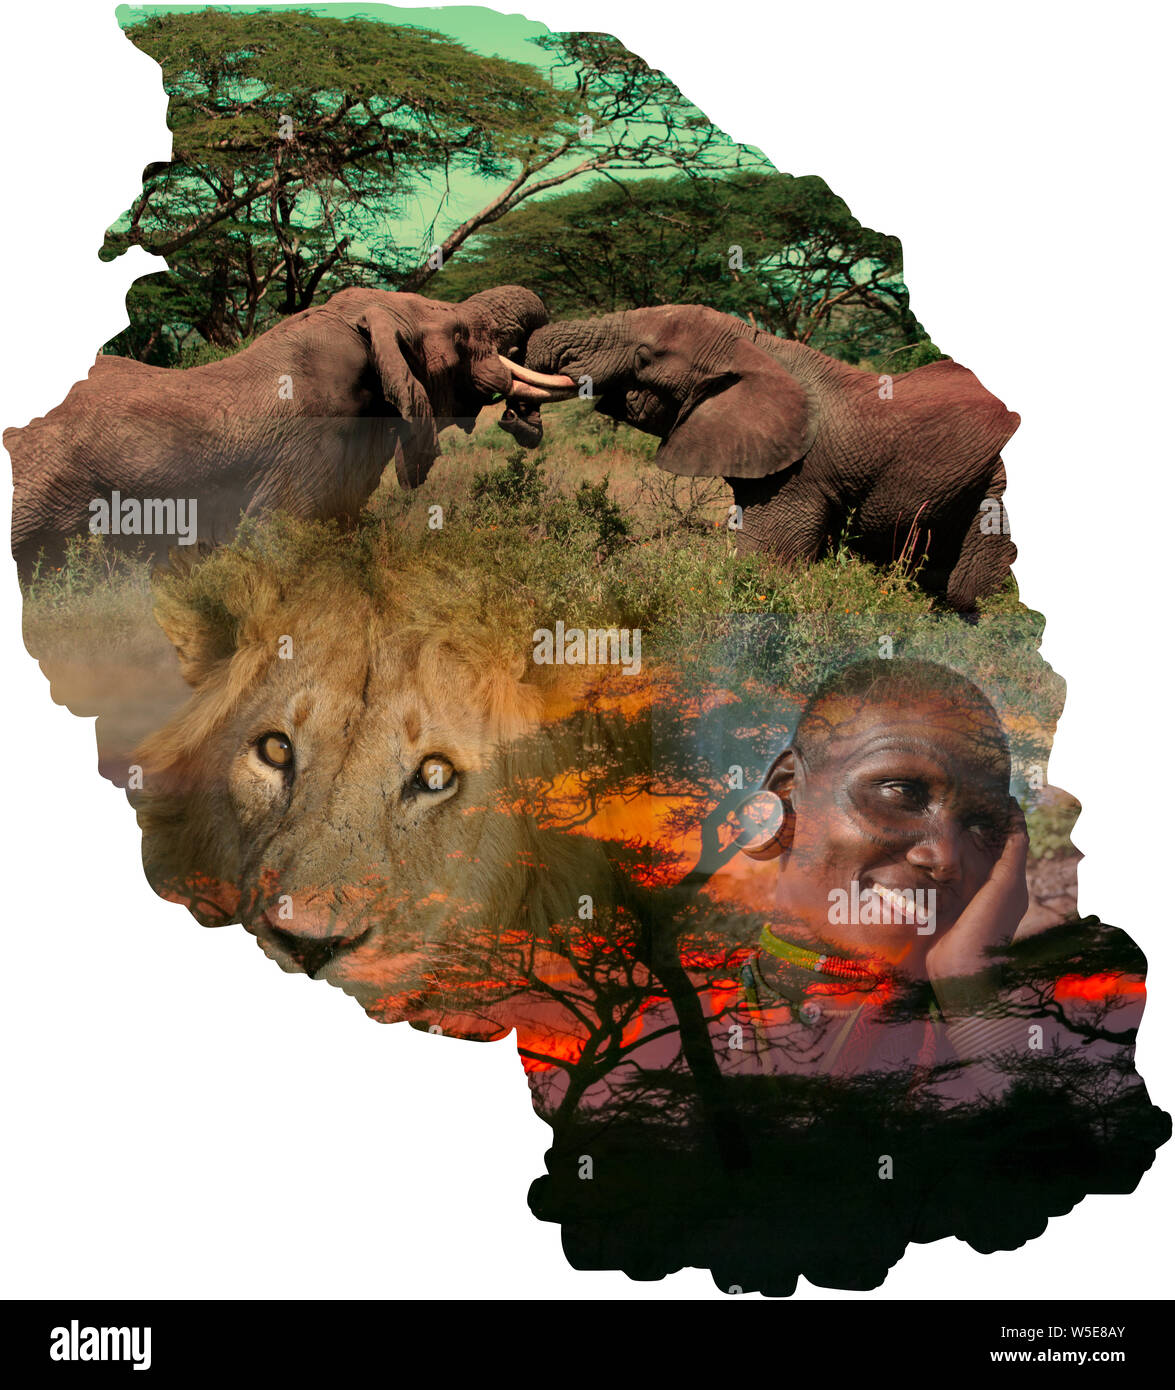 Amélioration de l'image numérique d'une carte de Tanzanie collage avec des images de la faune et des gens Banque D'Images